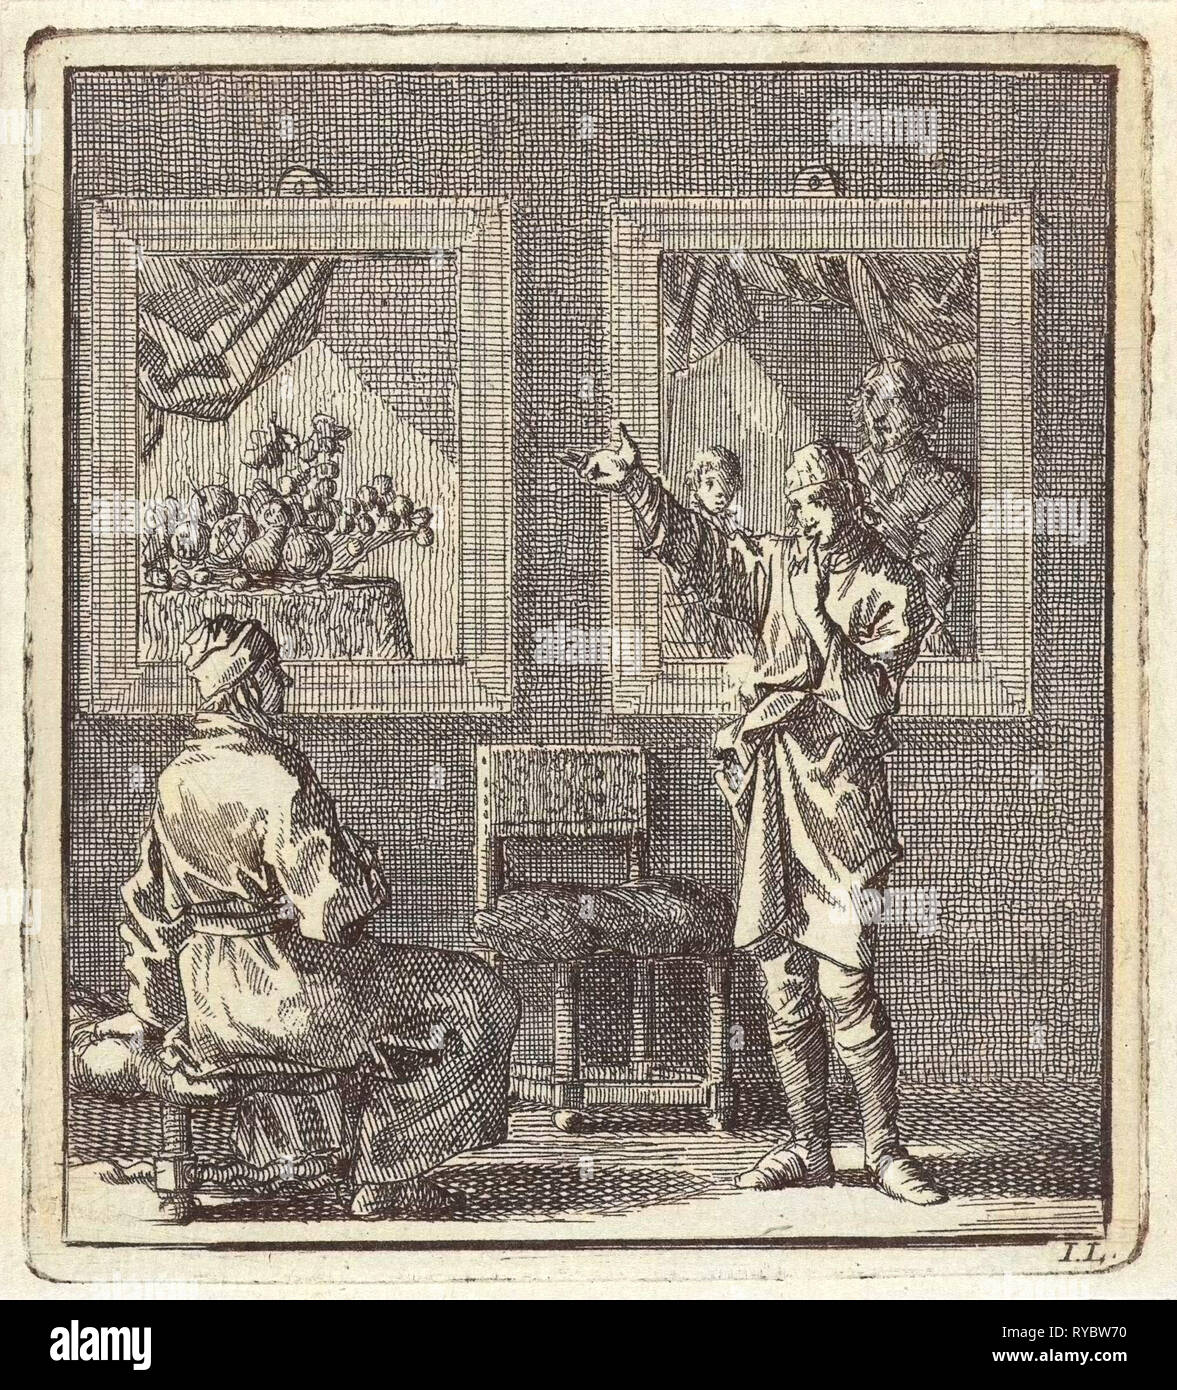 Jeune homme parle des peintures pendaison derrière lui, imprimer bouilloire : Jan Luyken, mer. Arentsz & Pieter Cornelis van der Sys II, 1711 Banque D'Images